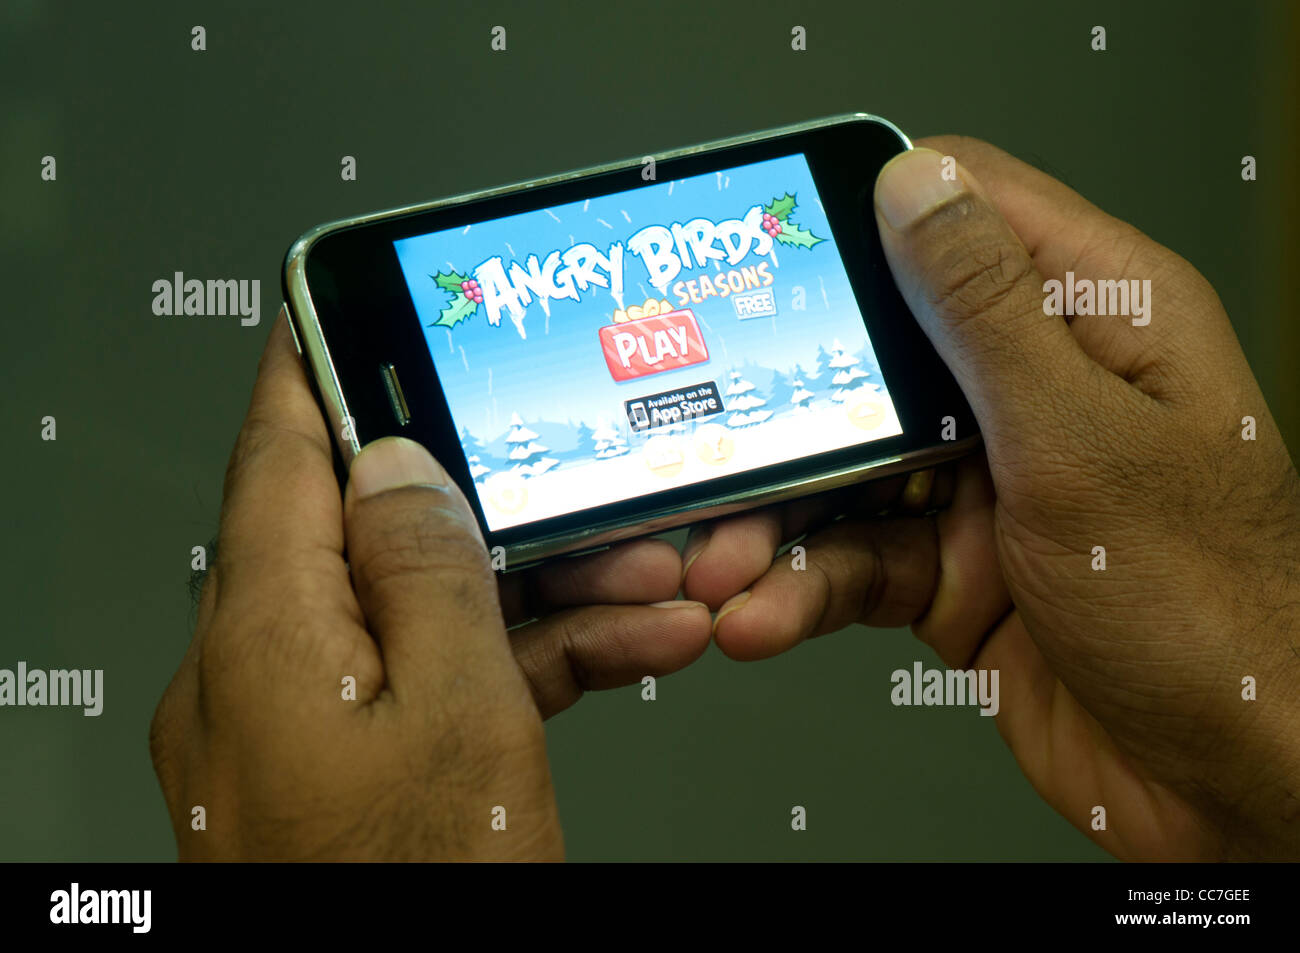 Angry Birds seasons juego en el iphone teléfono móvil Foto de stock